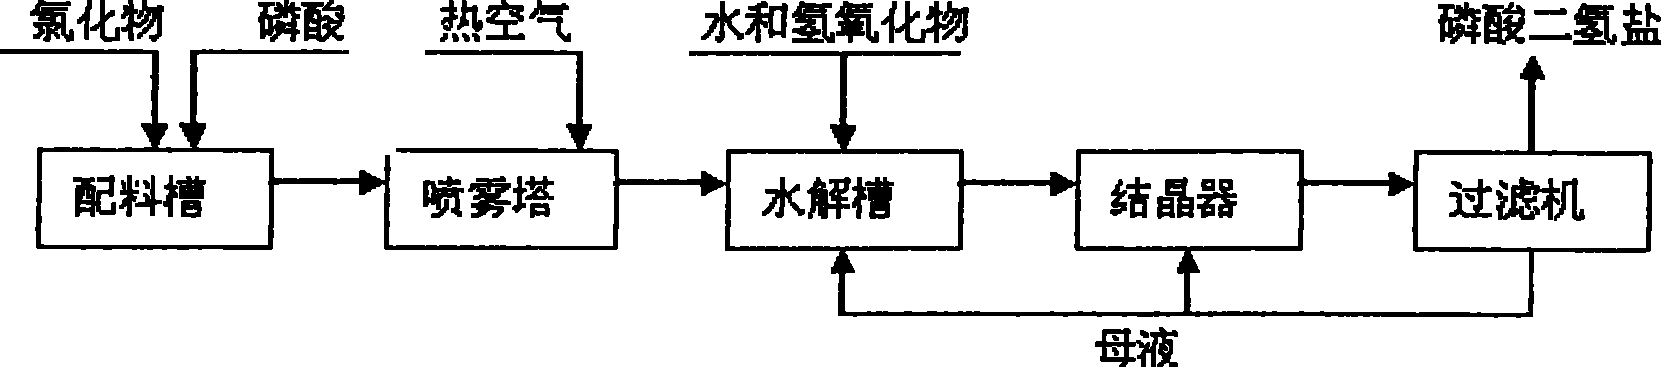 Method for preparing dihydric phosphate